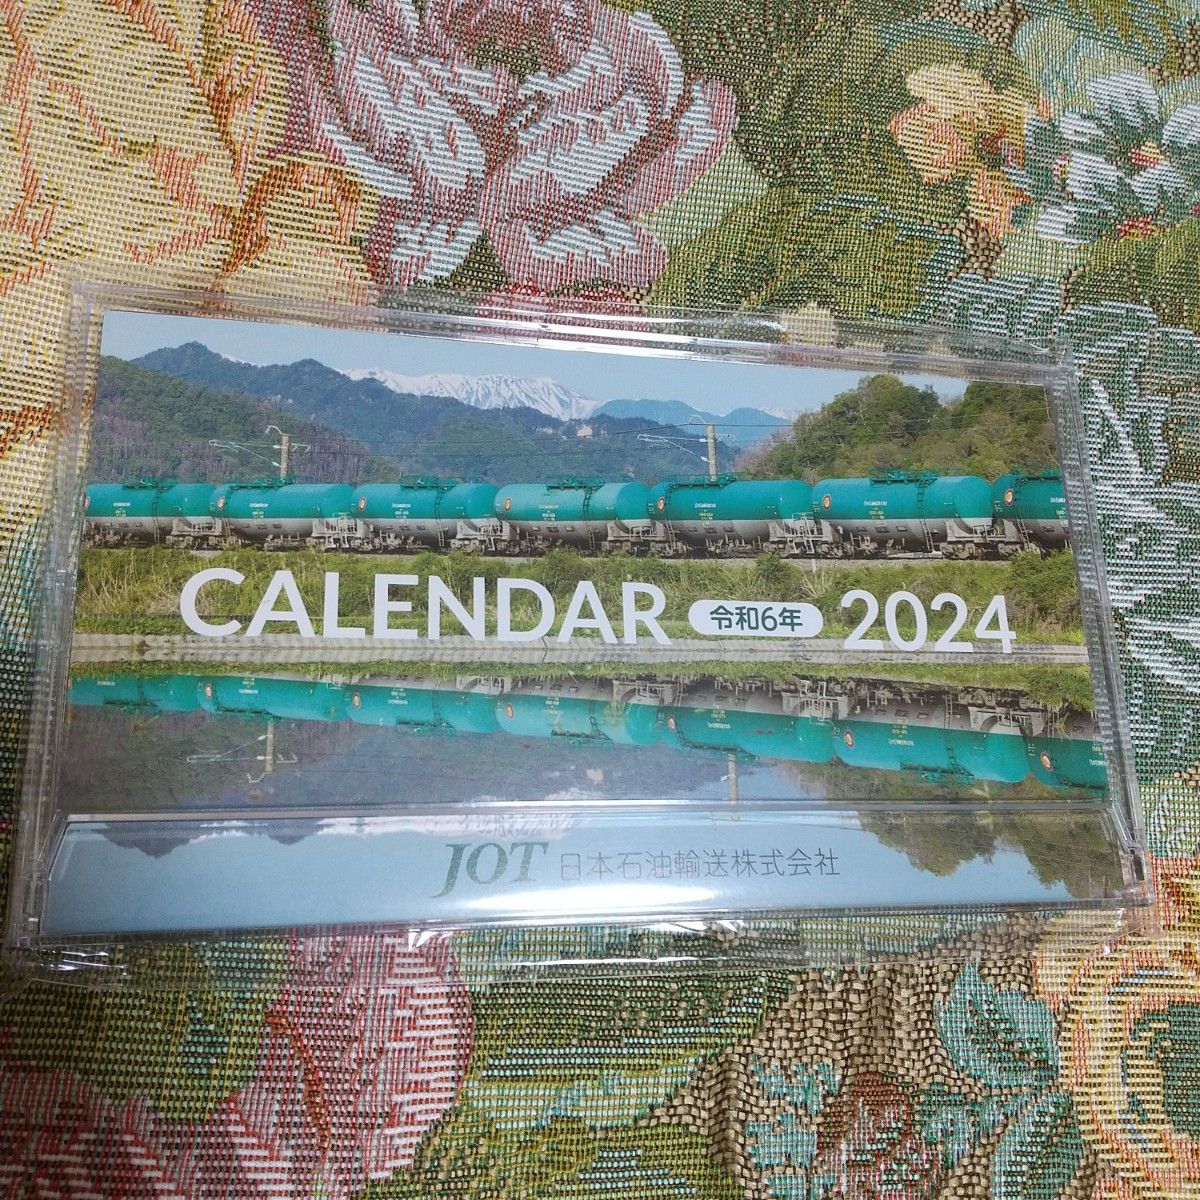 京葉臨海鉄道2024カレンダー  JOT2024卓上カレンダー  ボールペン  ポーチ